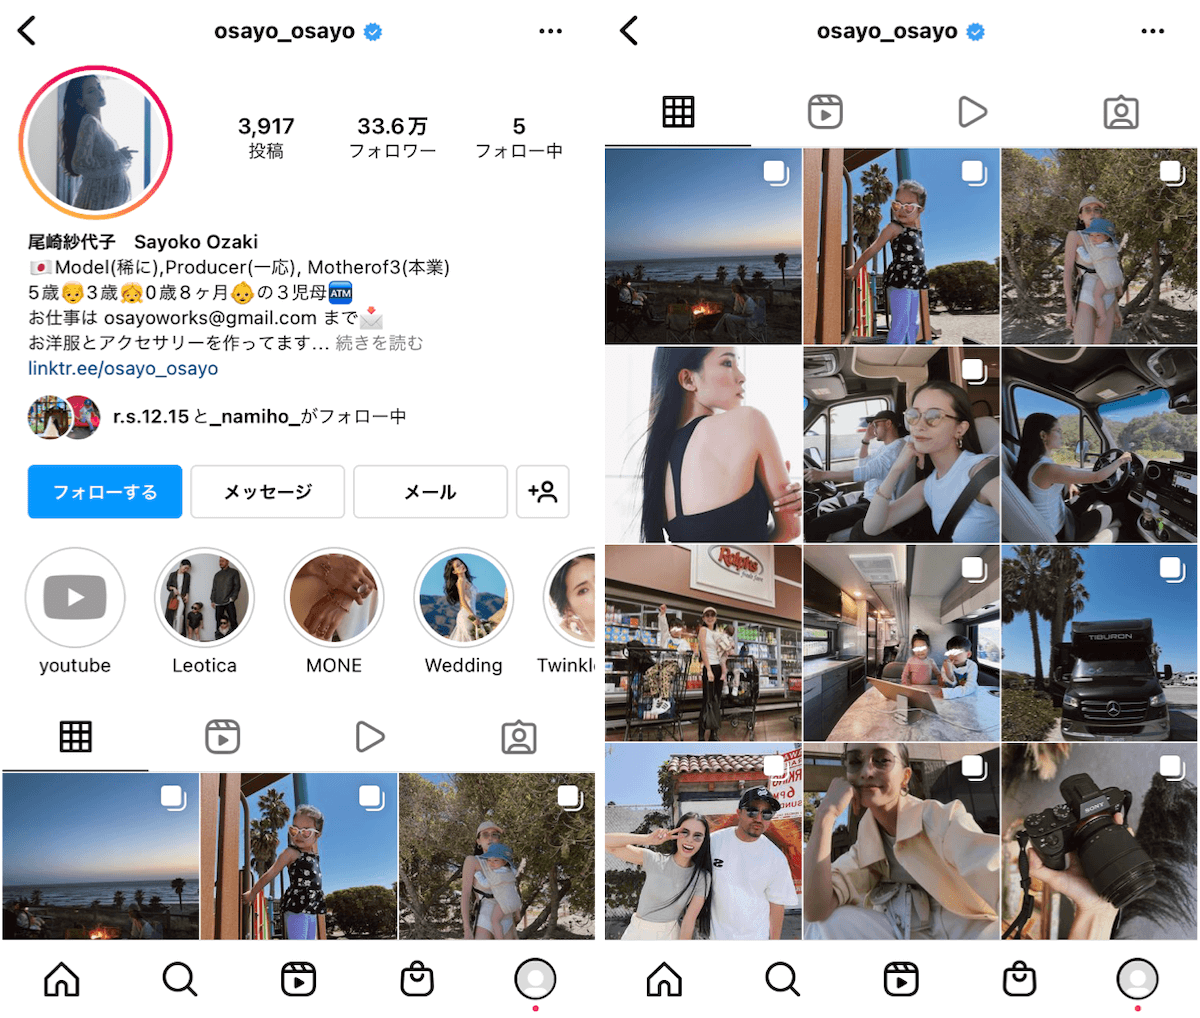 instagram-accessory-influencer-sayoko-ozaki